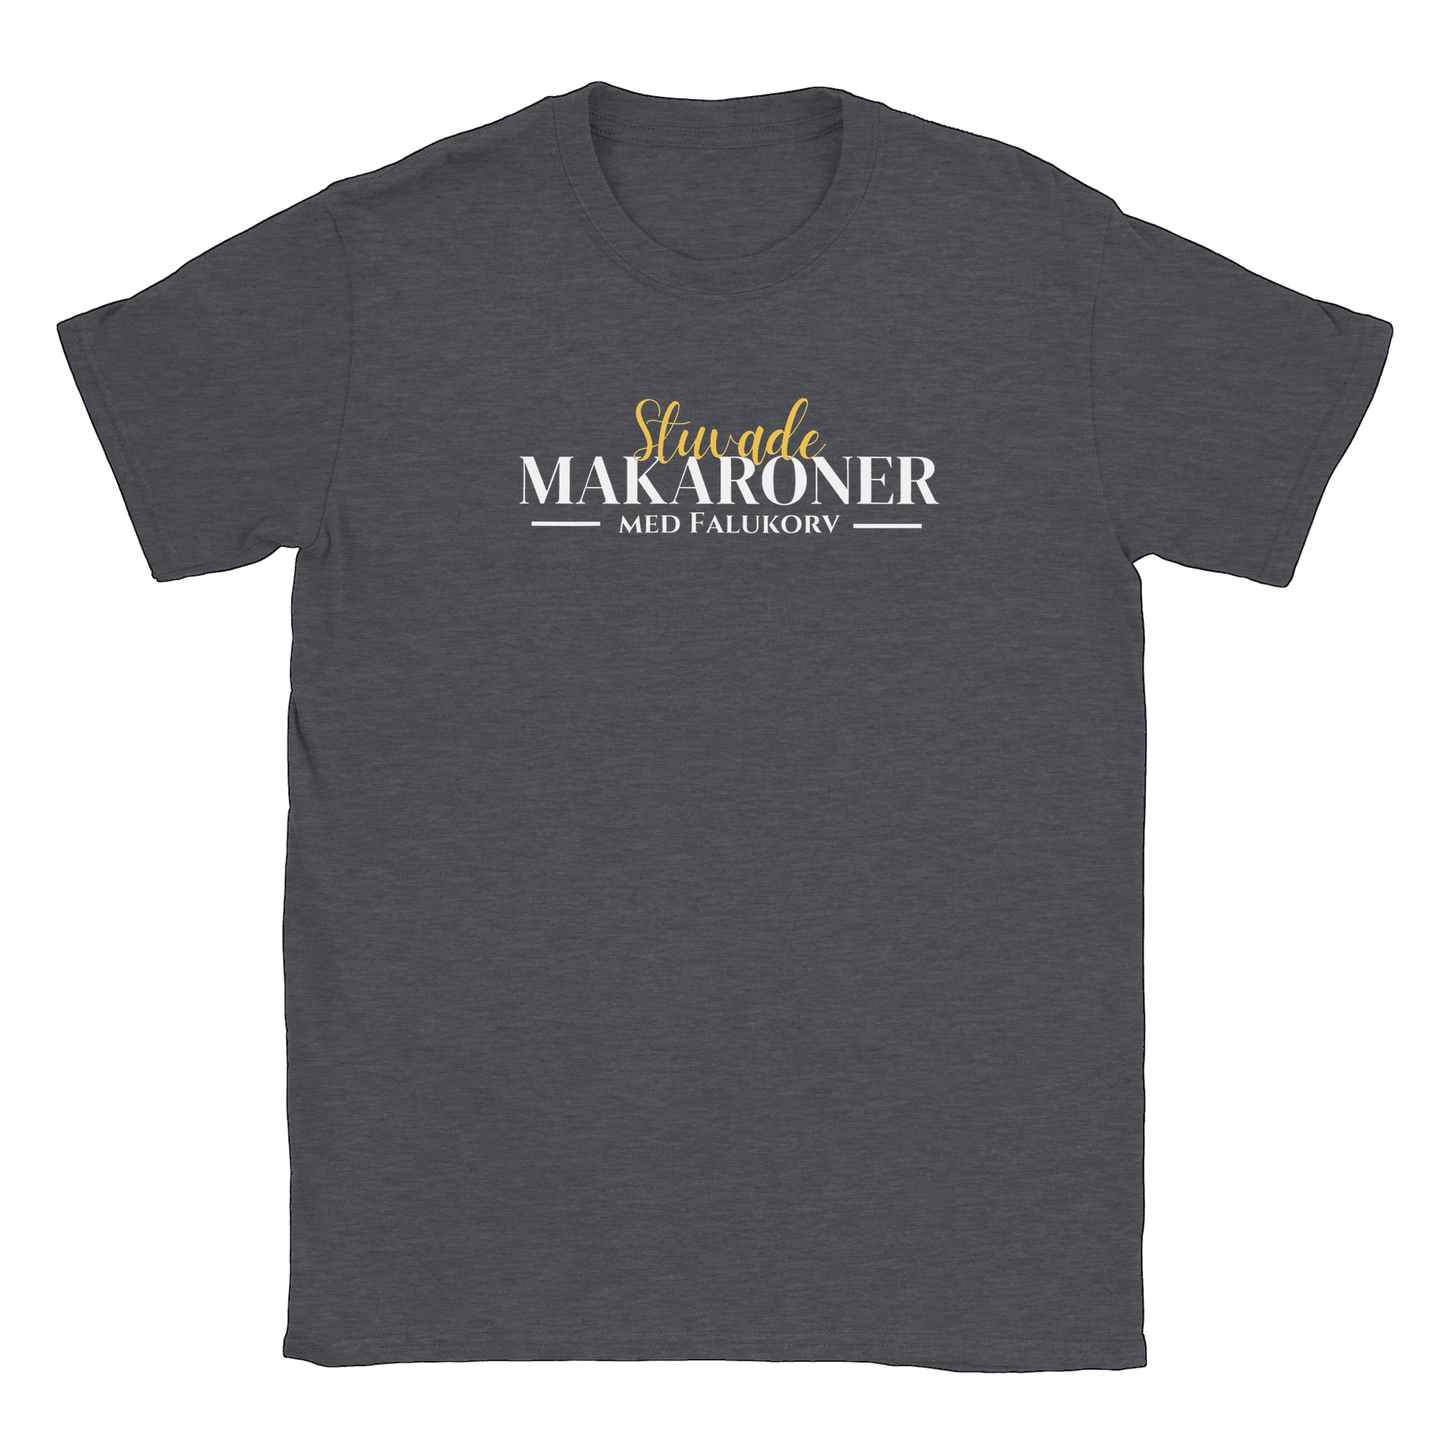 Stuvade makaroner med falukorv - T-shirt Mörk Ljung